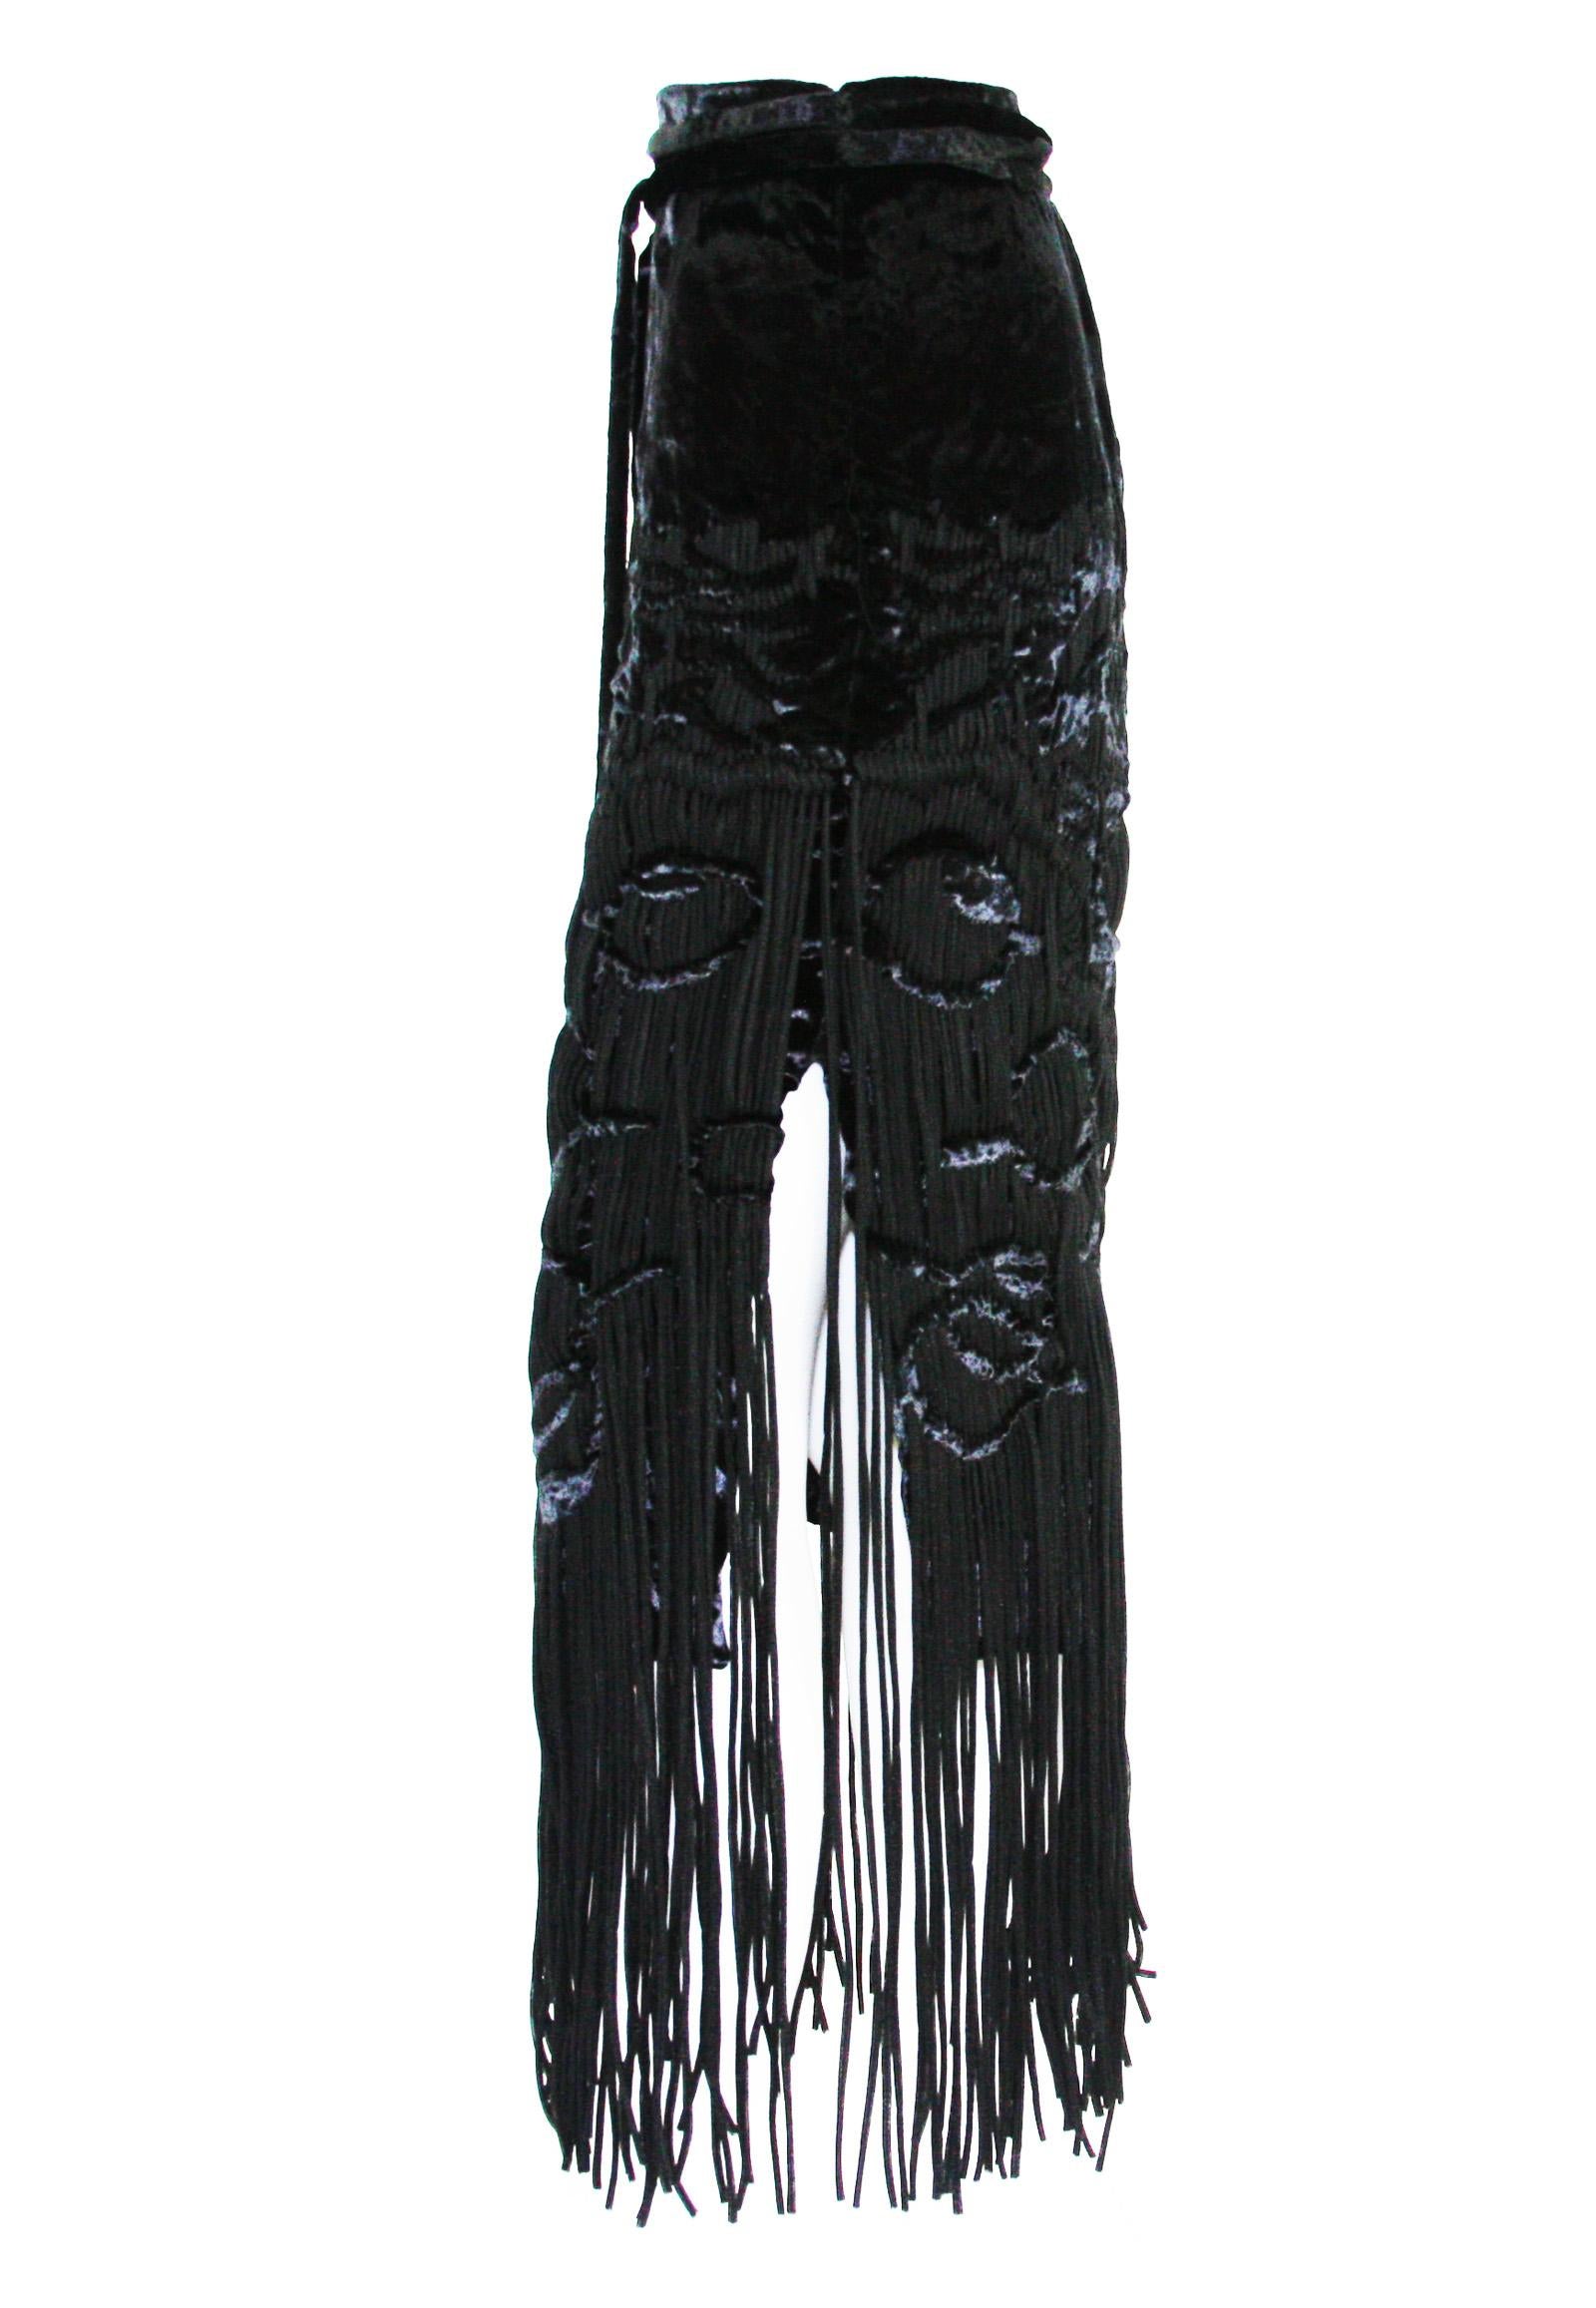 Tom Ford for Yves Saint Laurent 2001-2003 Collection Silk Top Velvet Skirt Suit  For Sale 6